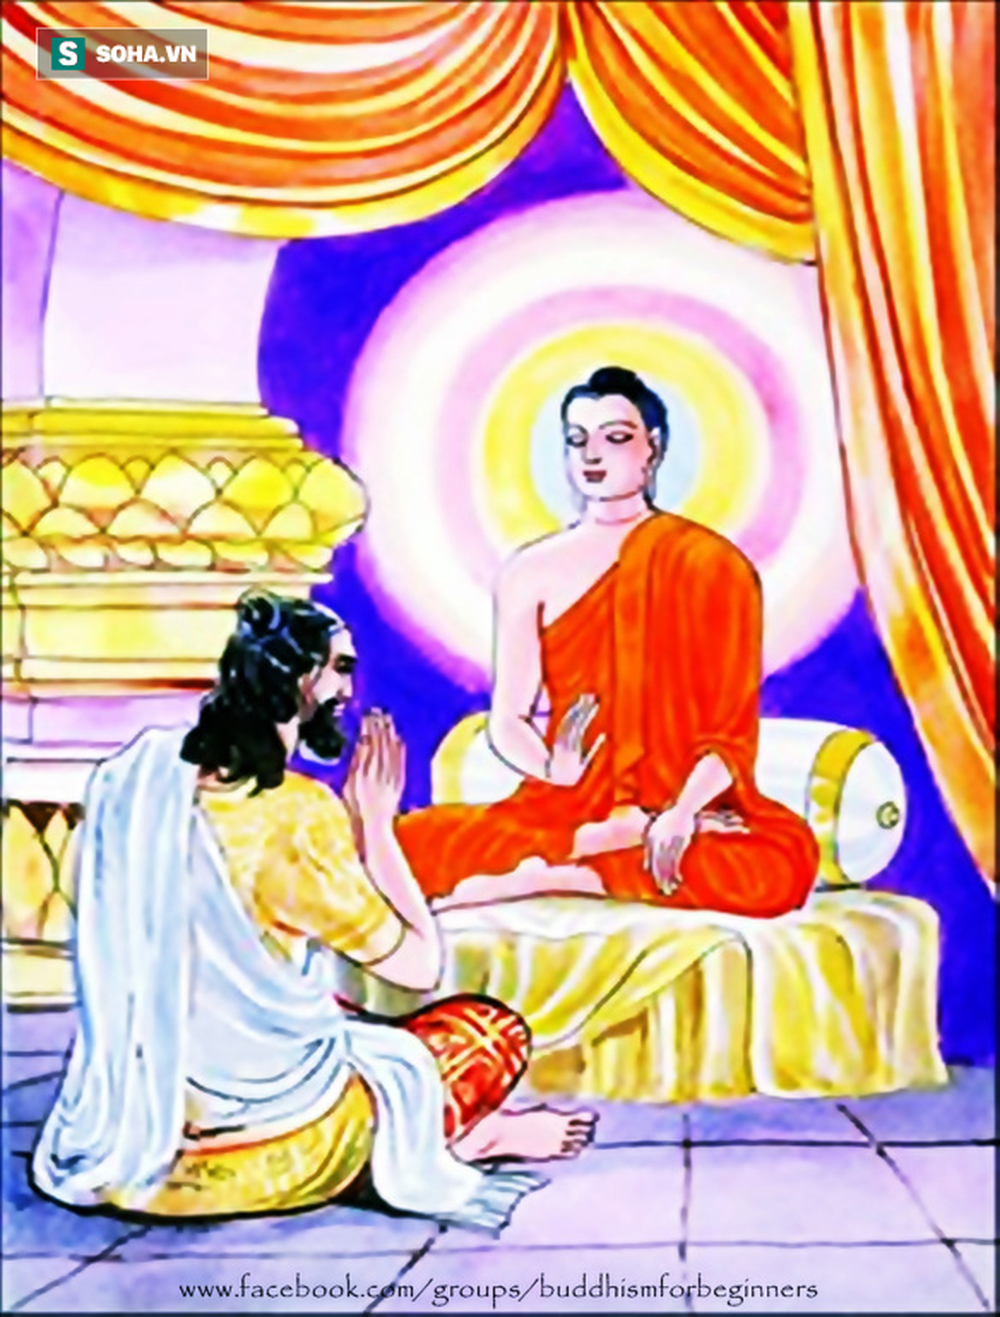 Bệnh tật đầy mình đến tìm Đức Phật, người đàn ông giật mình khi Ngài chỉ rõ 5 nguyên nhân - Ảnh 1.